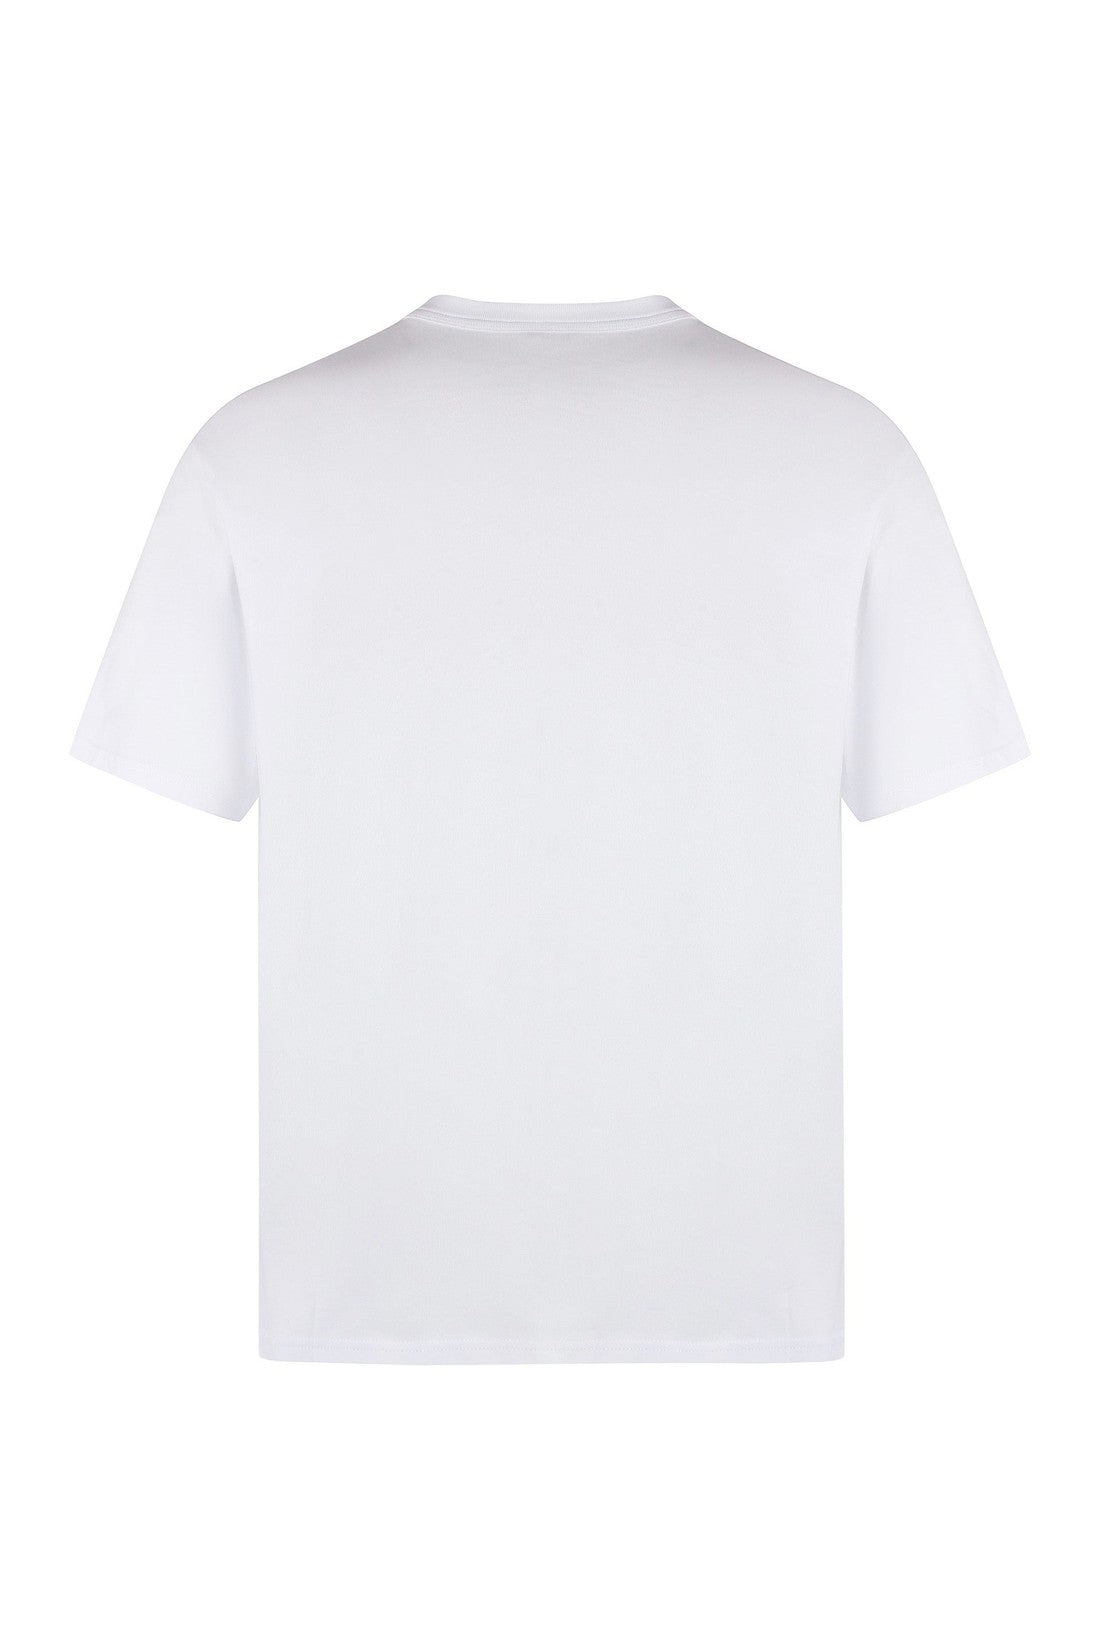 K-Way-OUTLET-SALE-Fantome Cotton crew-neck T-shirt-ARCHIVIST